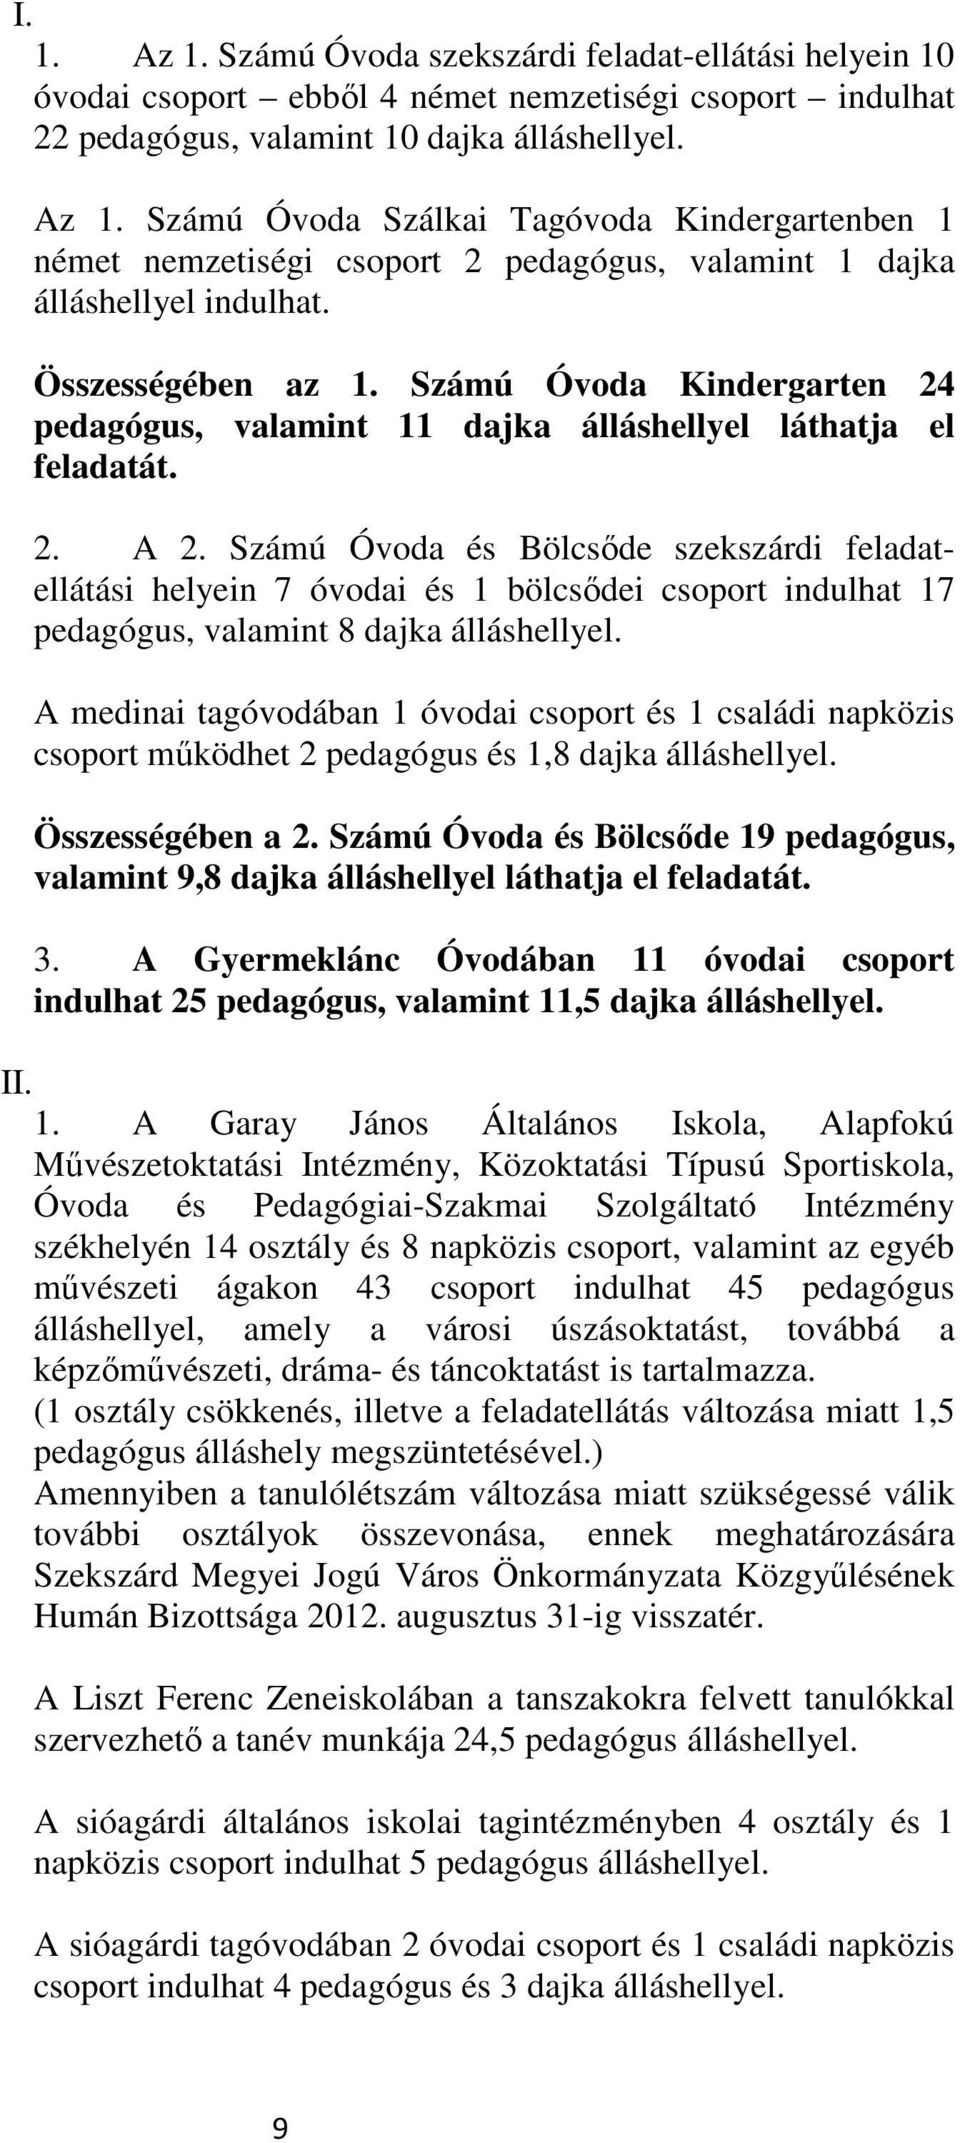 Számú Óvoda és Bölcsıde szekszárdi feladatellátási helyein 7 óvodai és 1 bölcsıdei csoport indulhat 17 pedagógus, valamint 8 dajka álláshellyel.